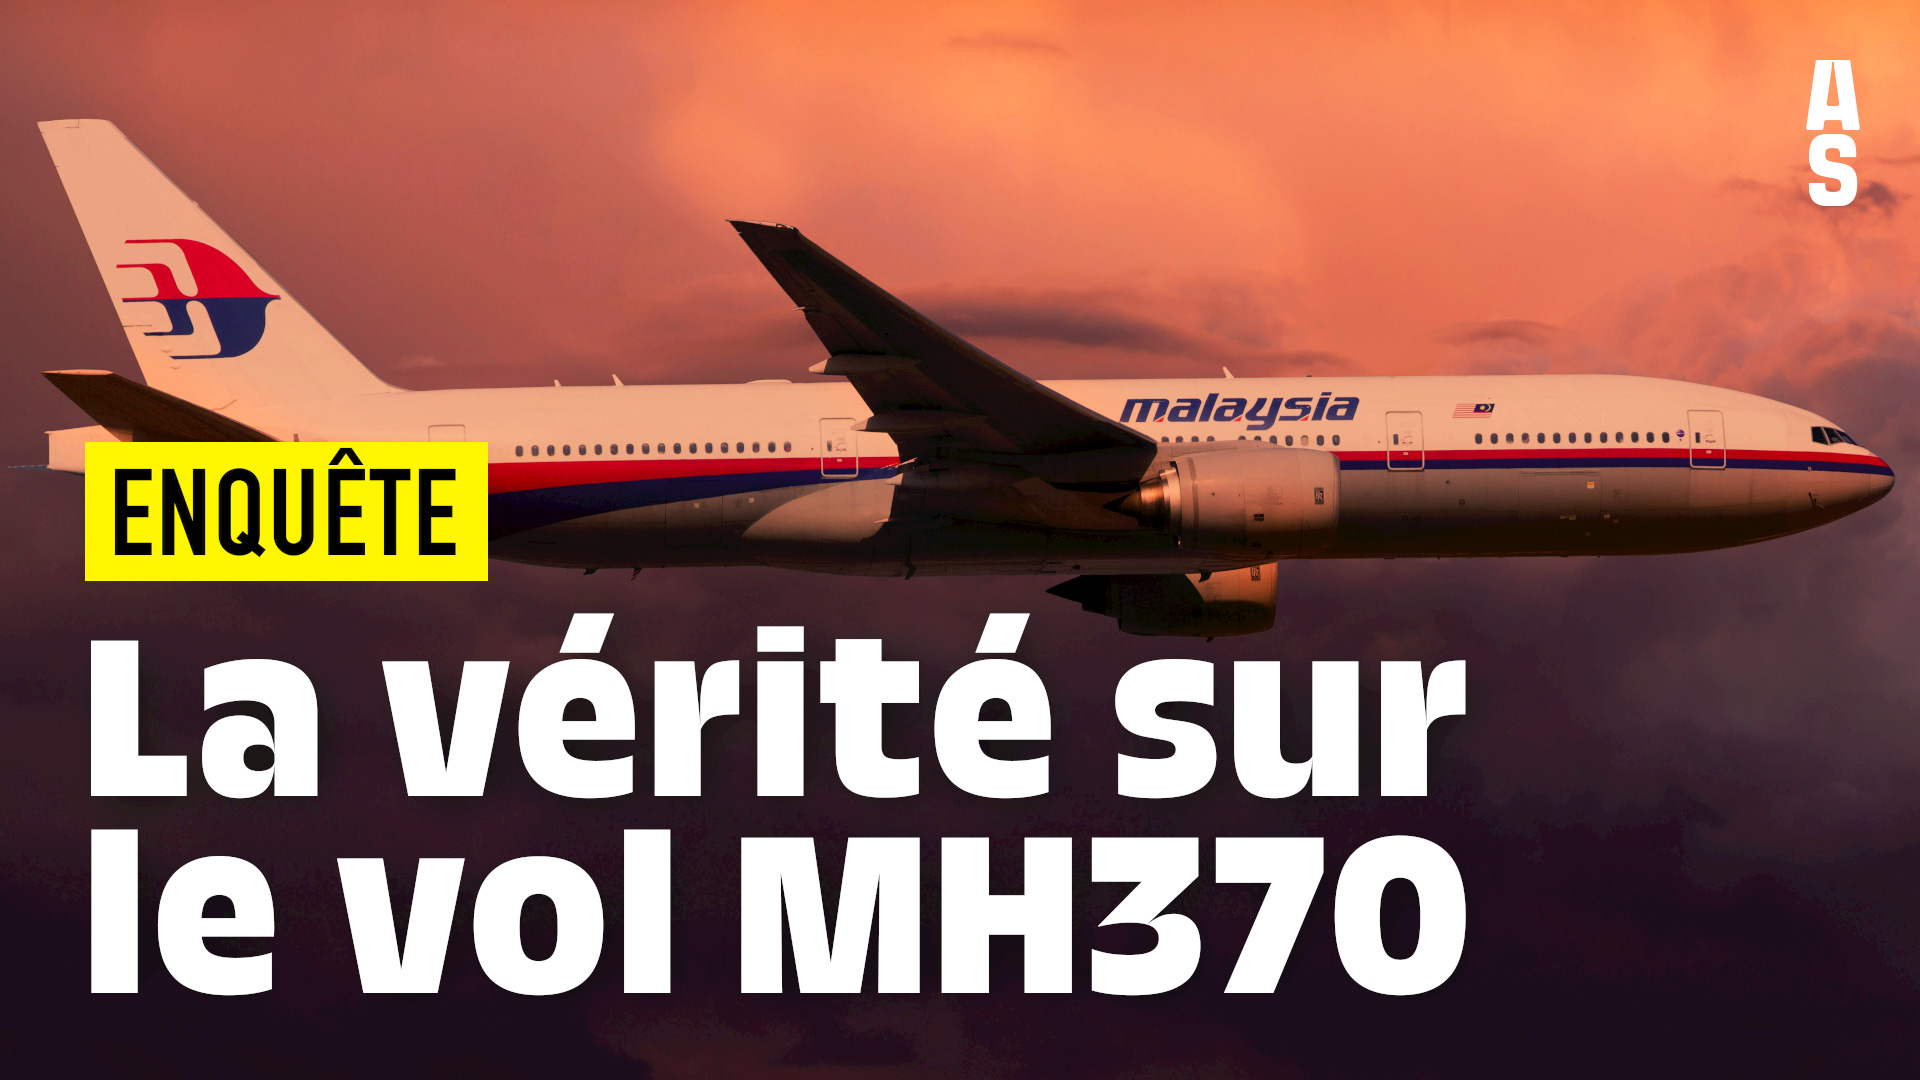 La vérité sur la disparition du vol MH370